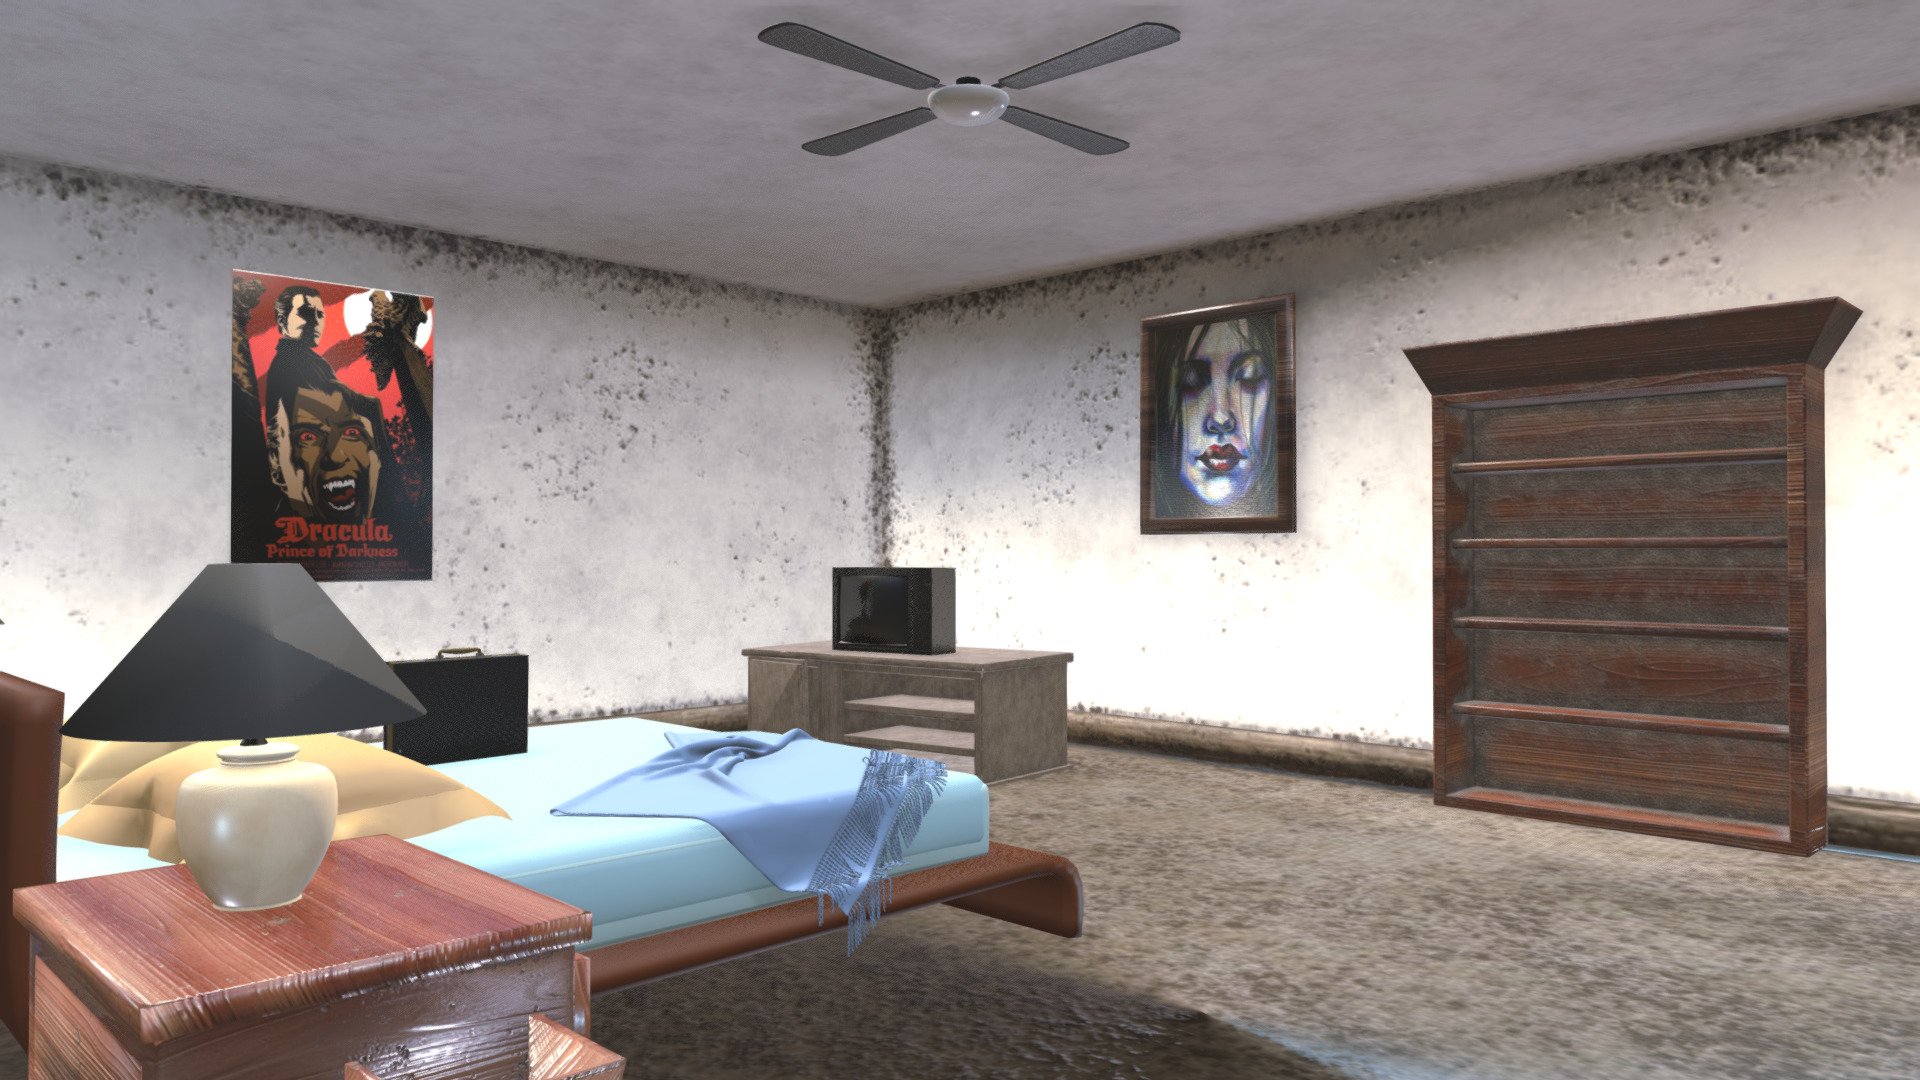 Motel Room - 3D model by lucasponcon 3d model